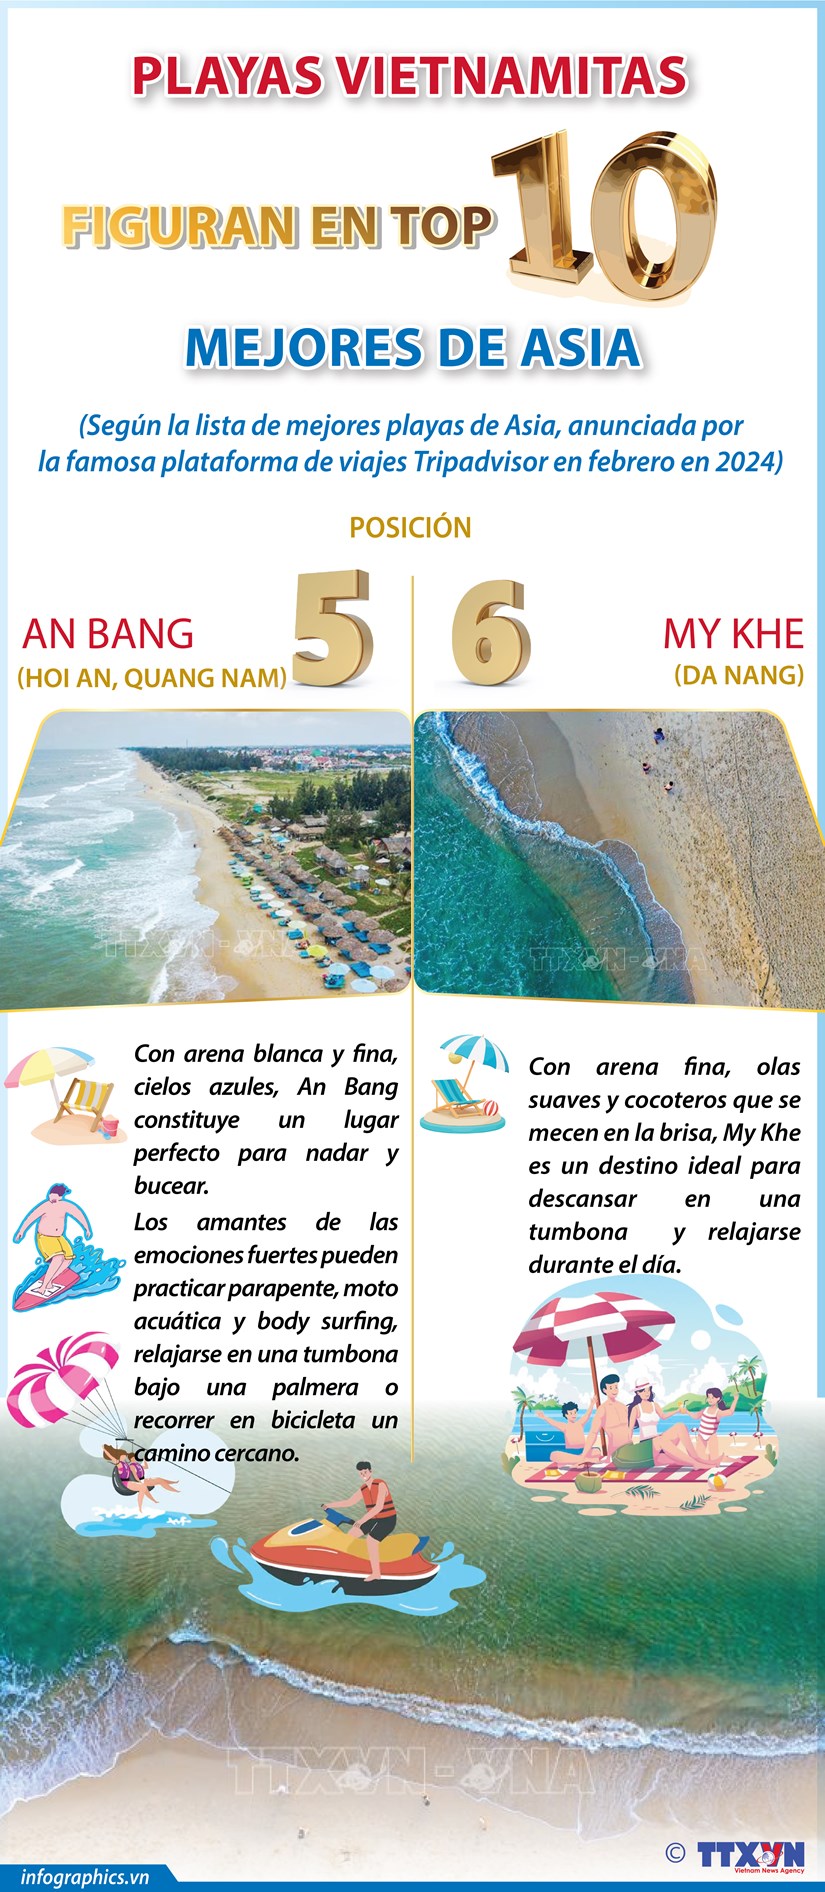 Playas vietnamitas figuran en top 10 mejores de Asia hinh anh 1